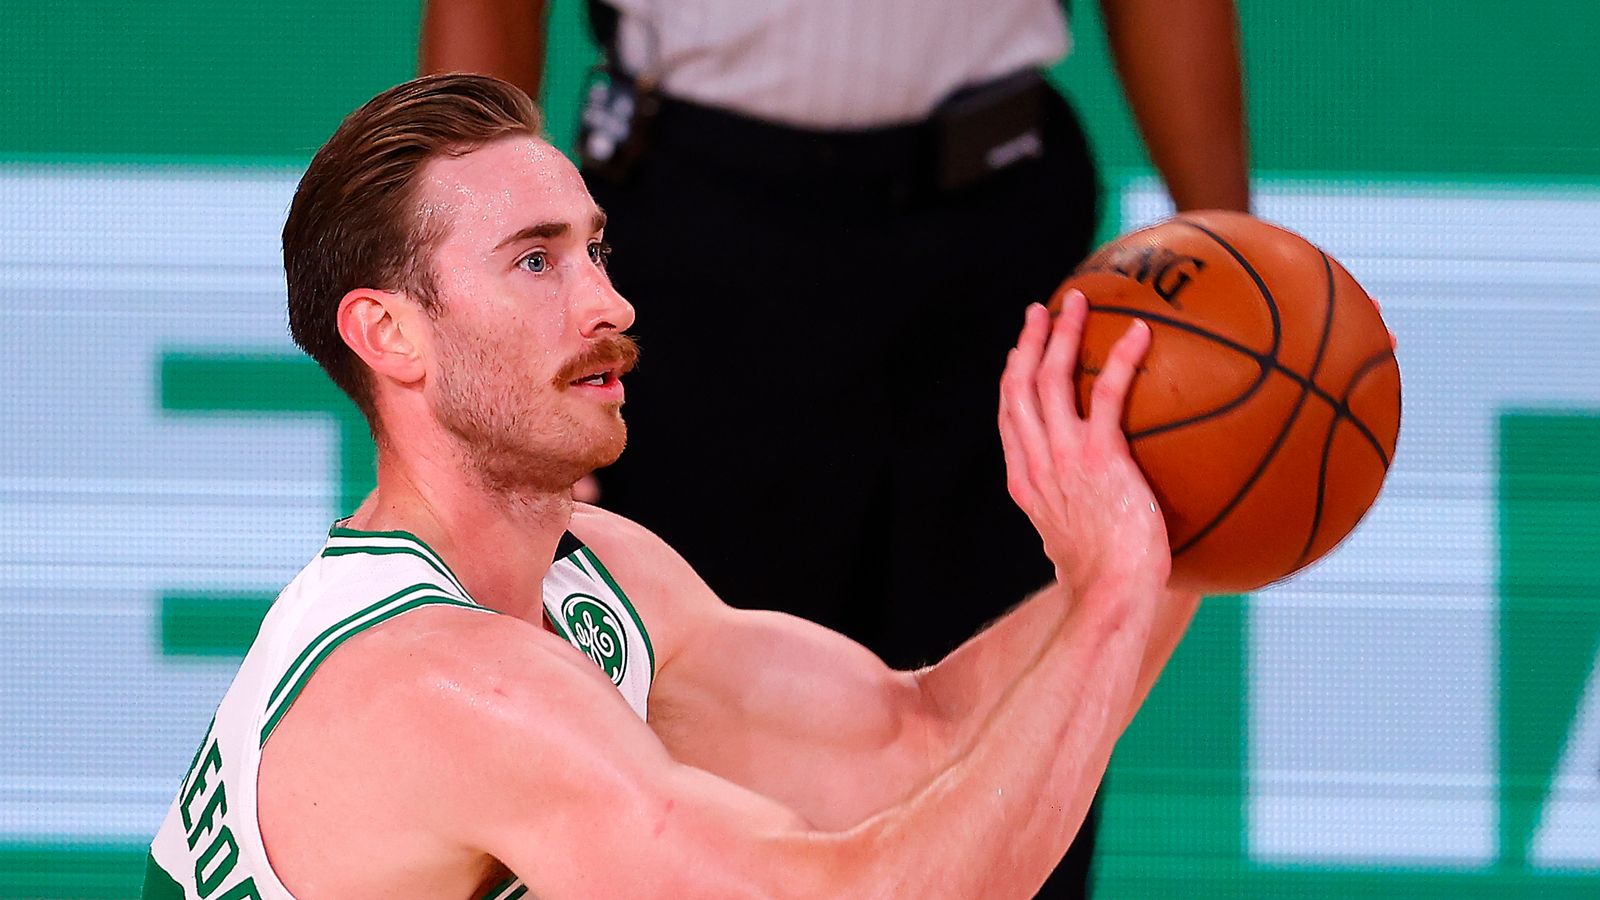 Hornets open NBA preseason basketball at Boston Celtics